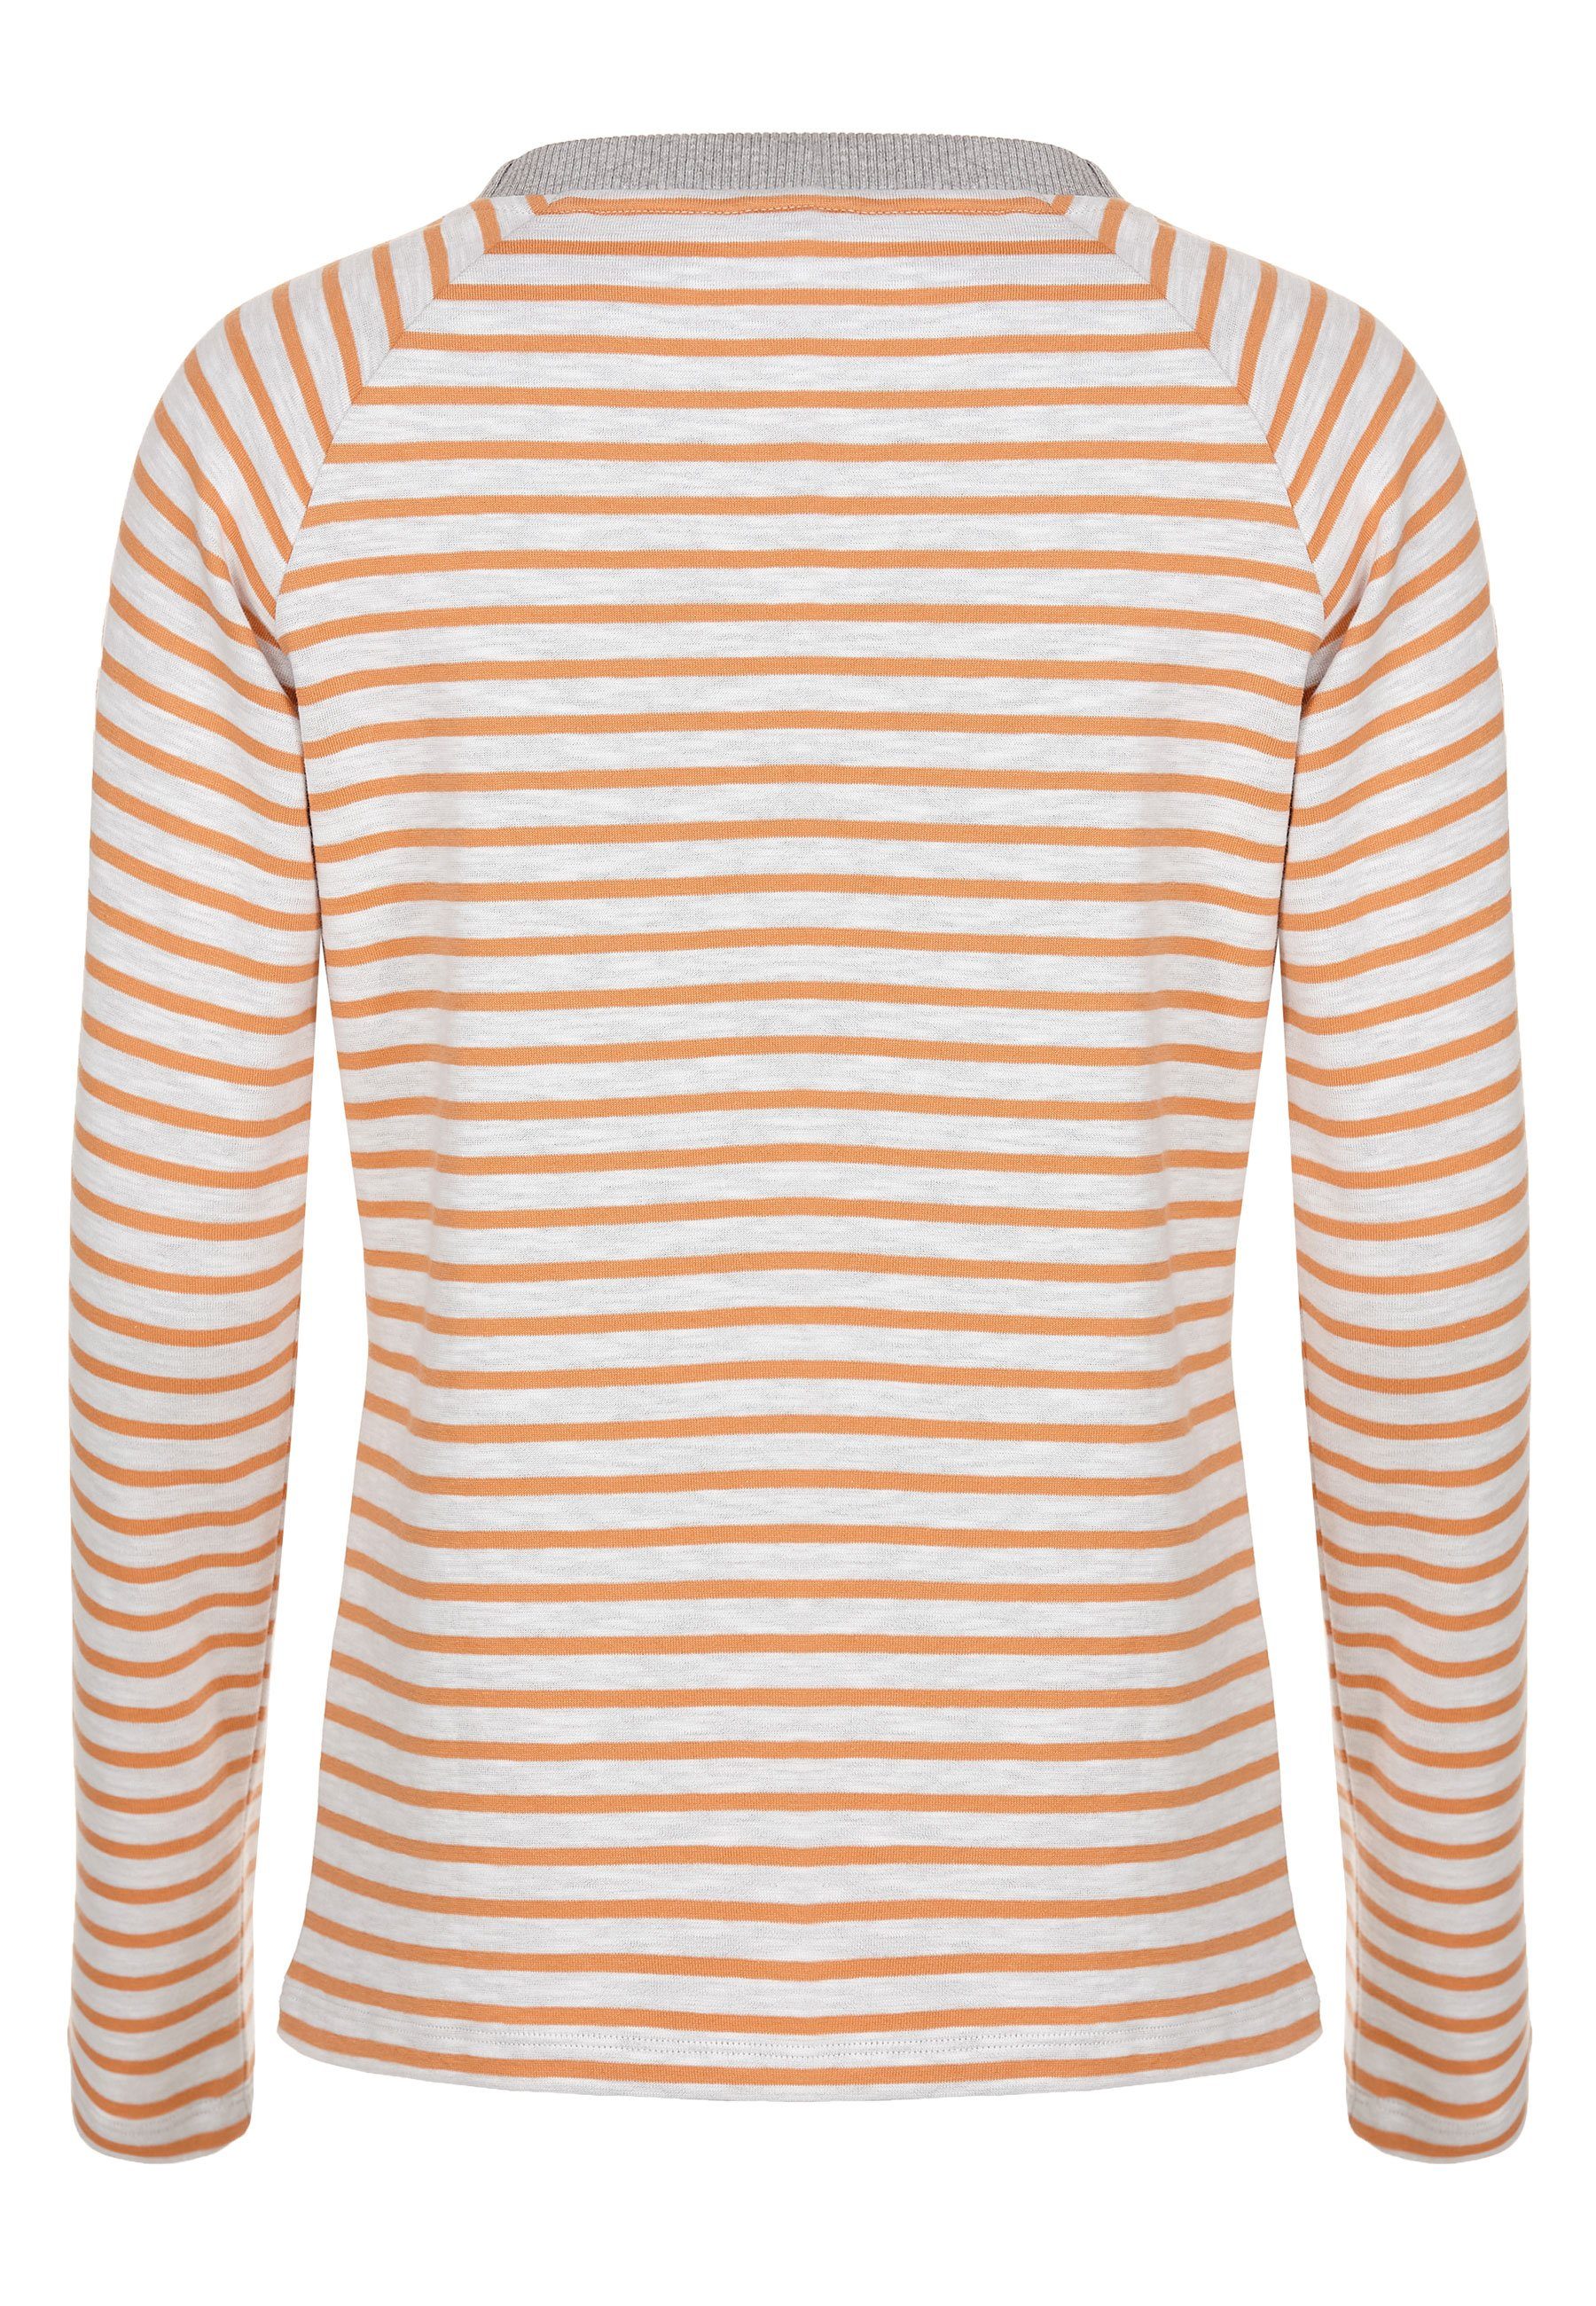 Tomorrow Sweatshirt weiter Elkline soft Halsausschnitt white Streifen orange -